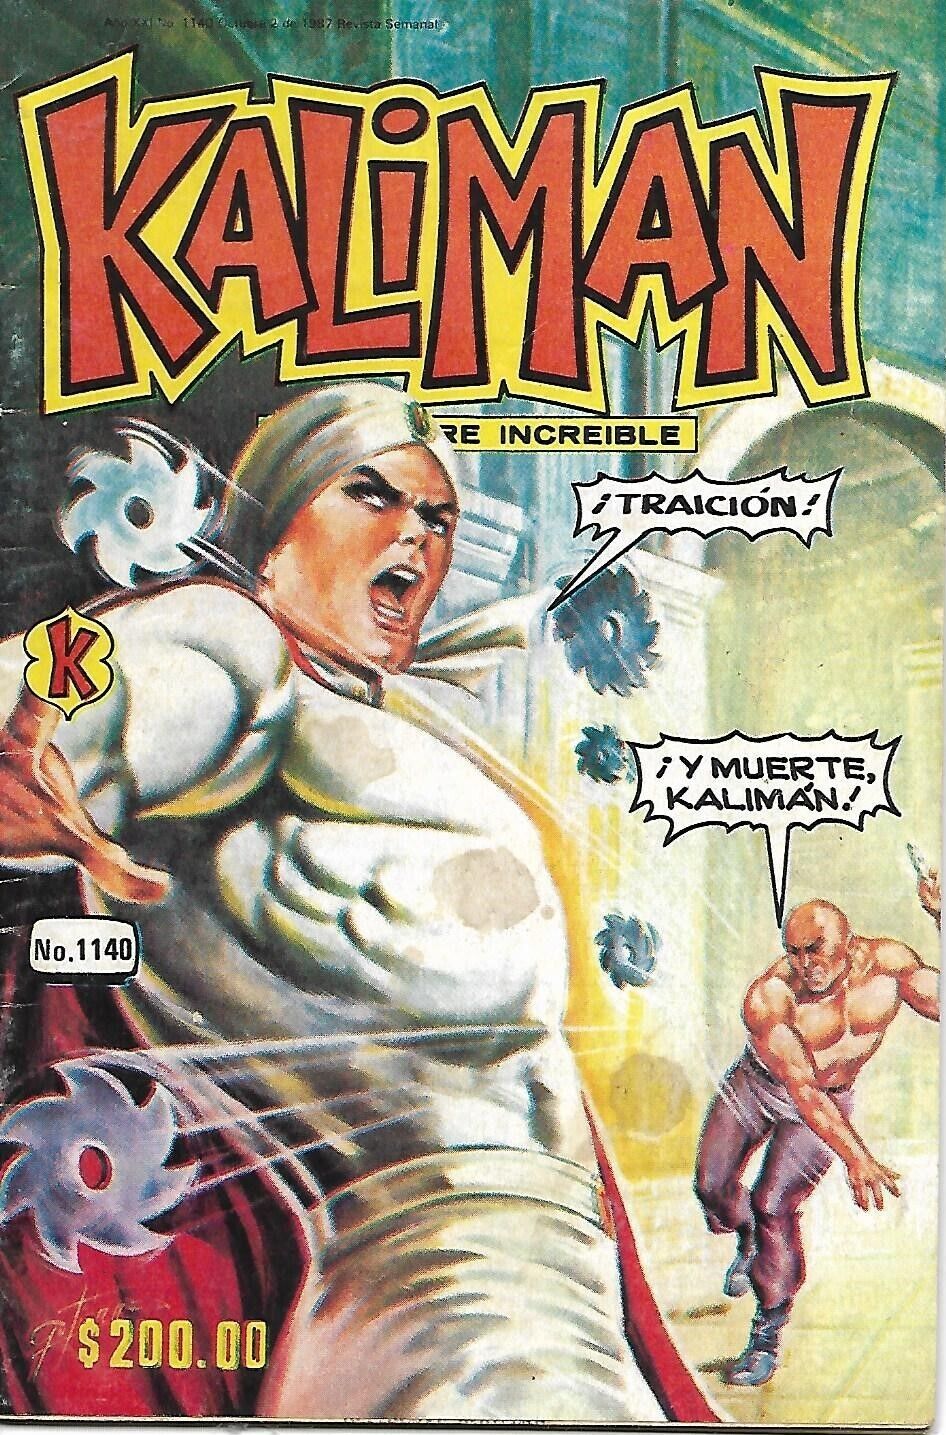 Kaliman El Hombre Increible #1140 - Octubre 2, 1987